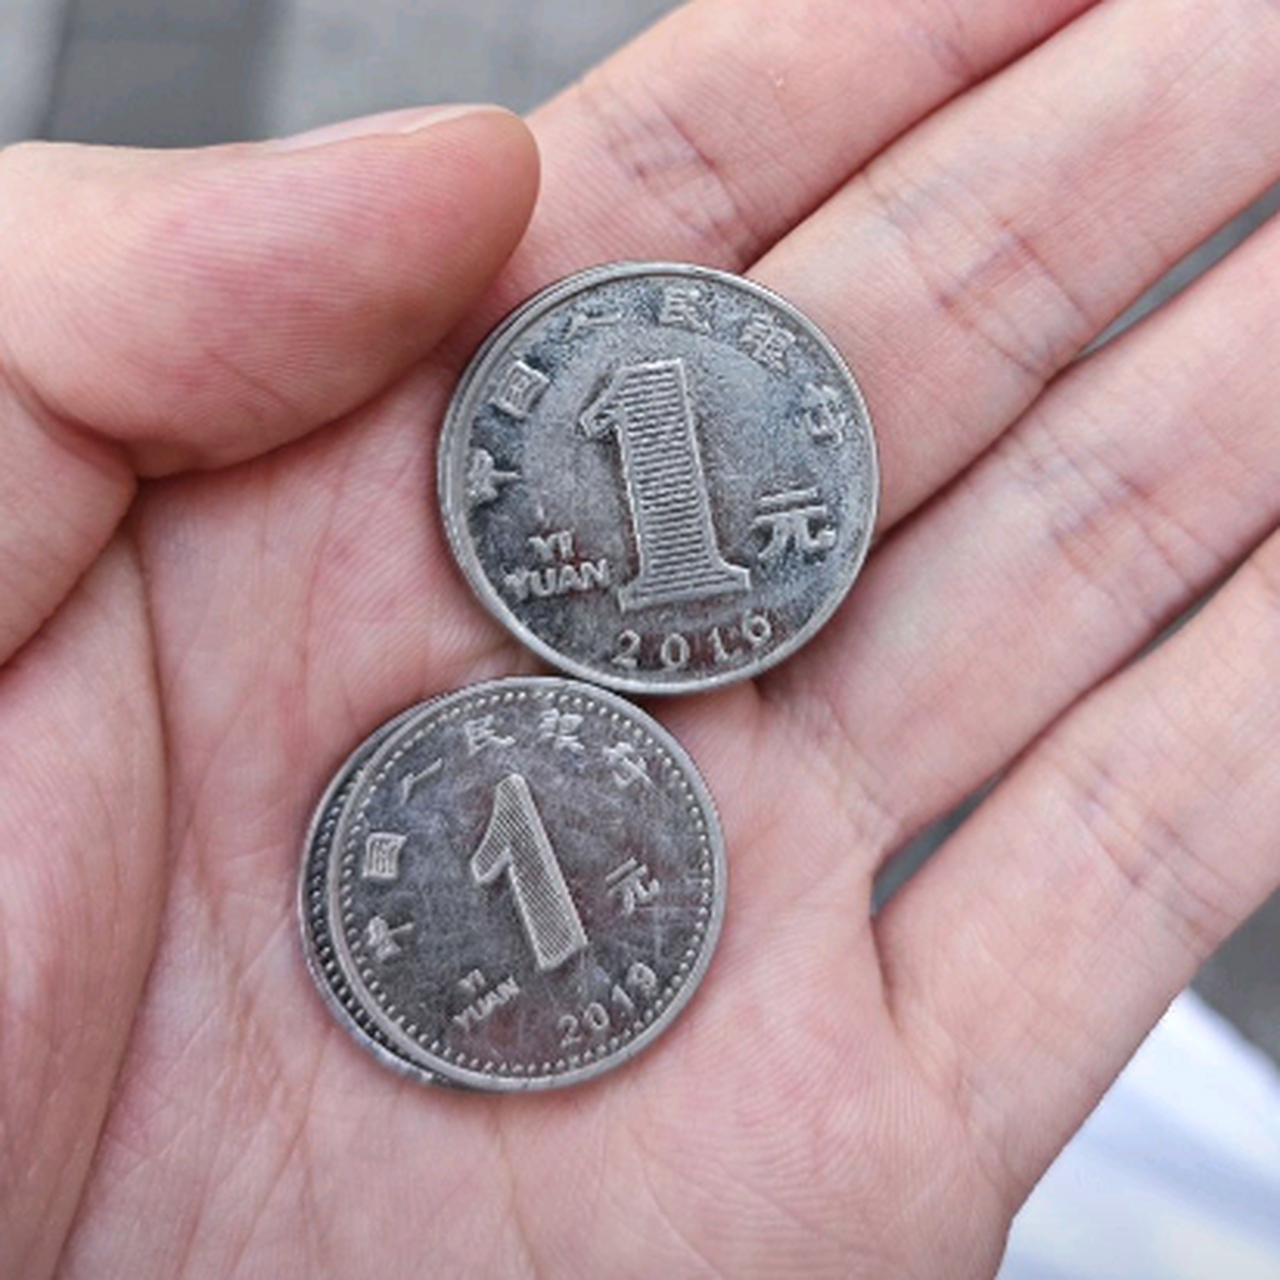 现在才发现,新版的一元硬币变小了